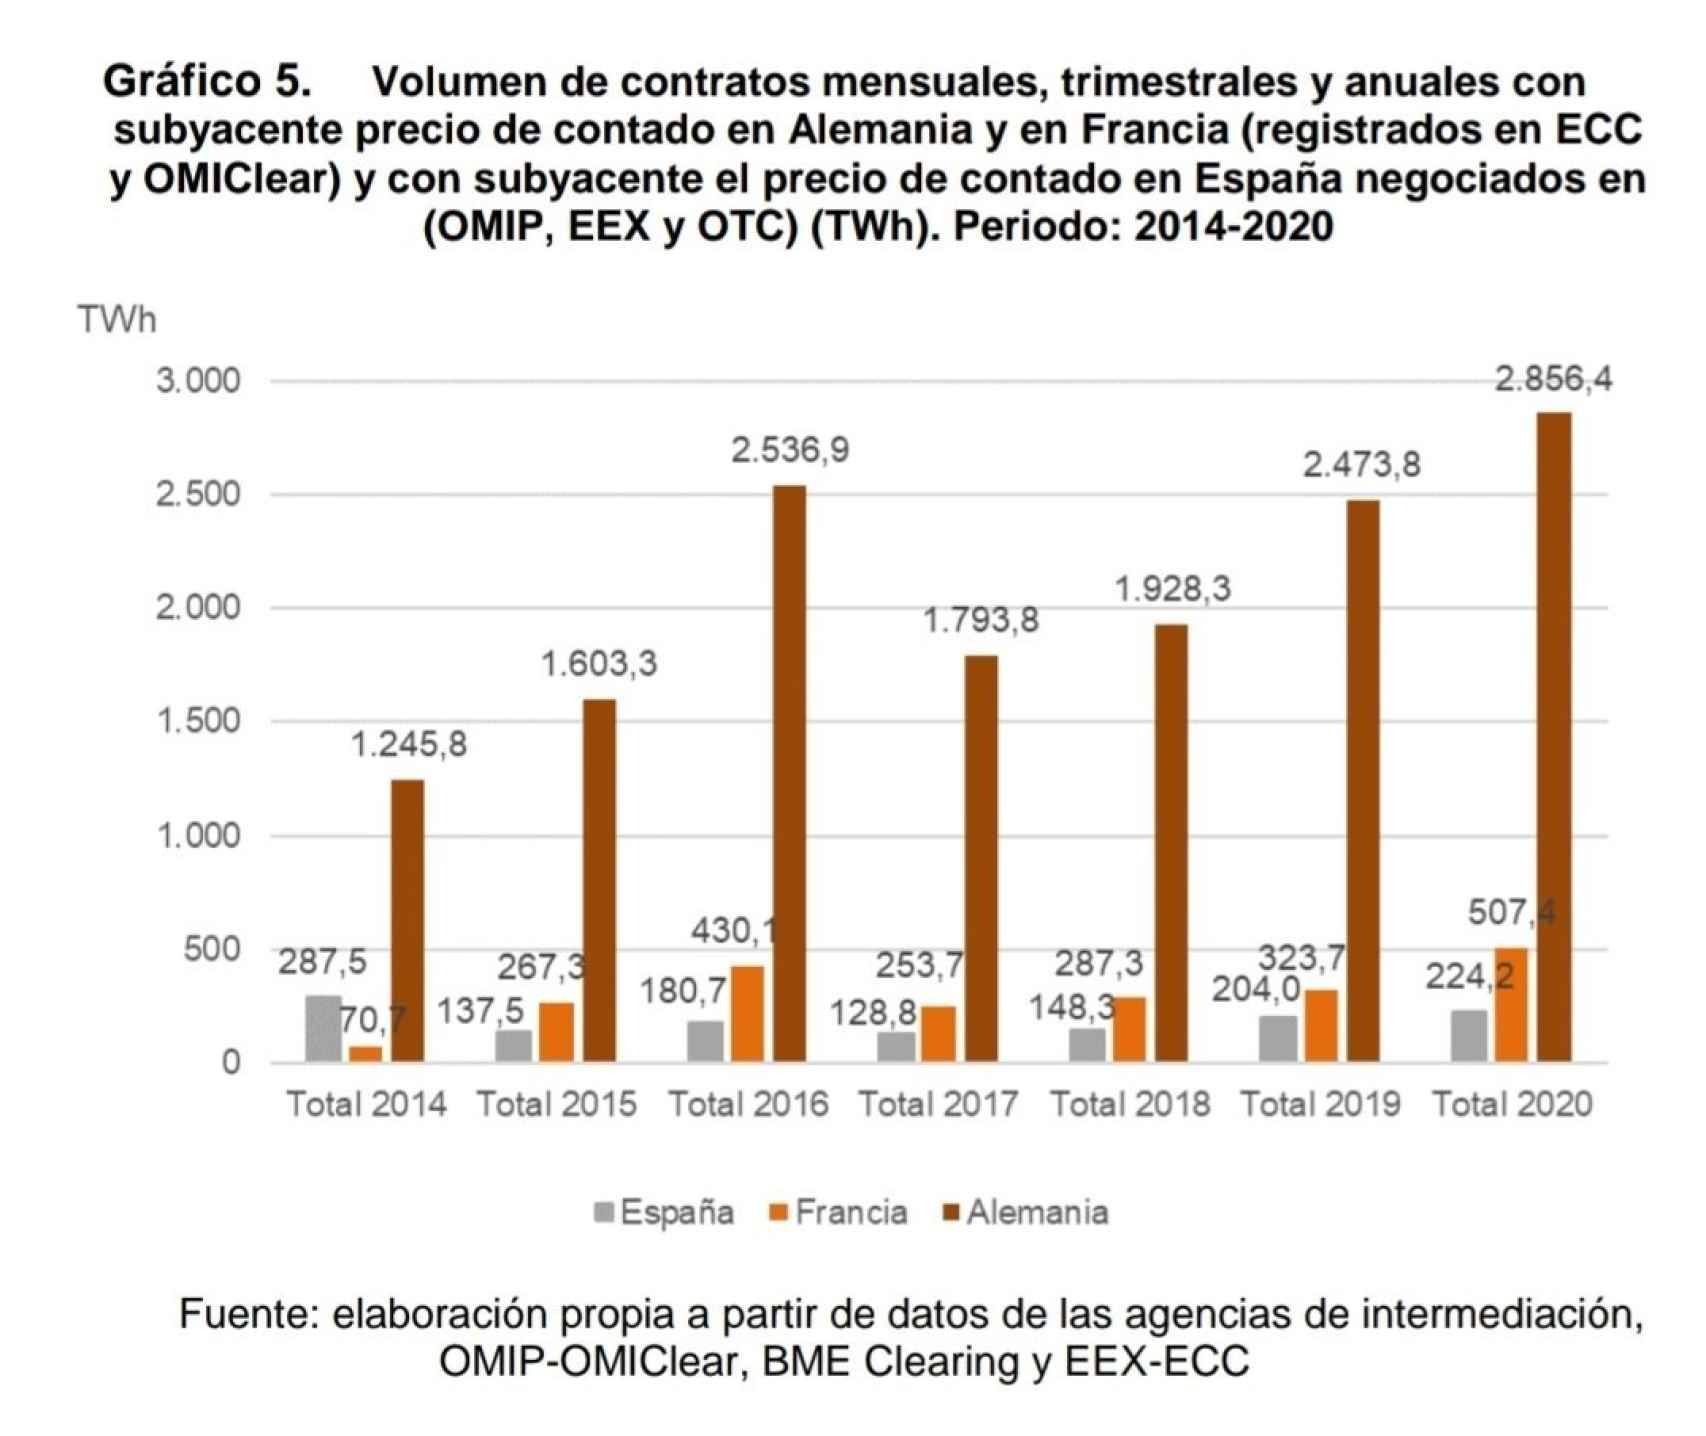 Volumen de contratos mensuales, trimestrales y anuales de Alemania y Francia respecto a España. Fuente CNMC.